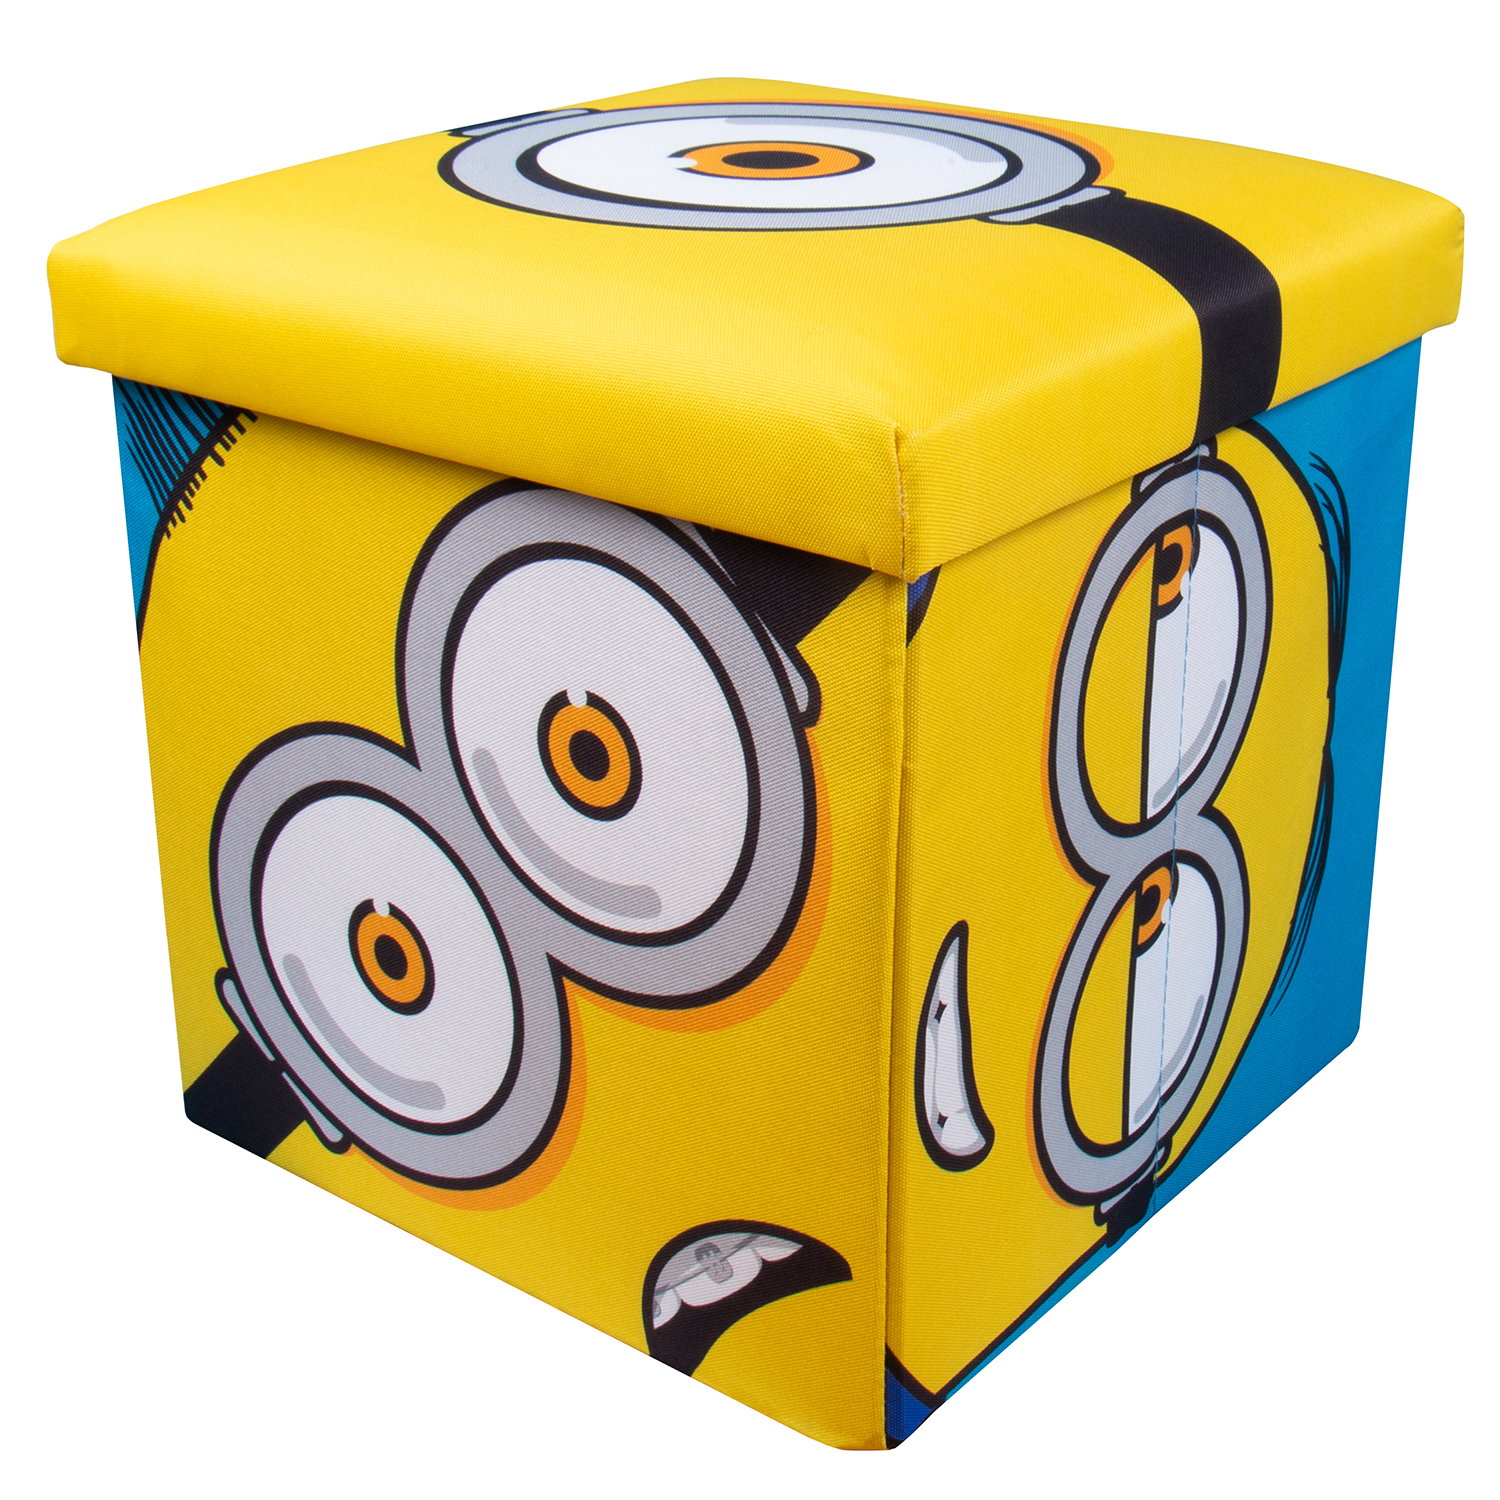 Minions Sound Box 3 in 1